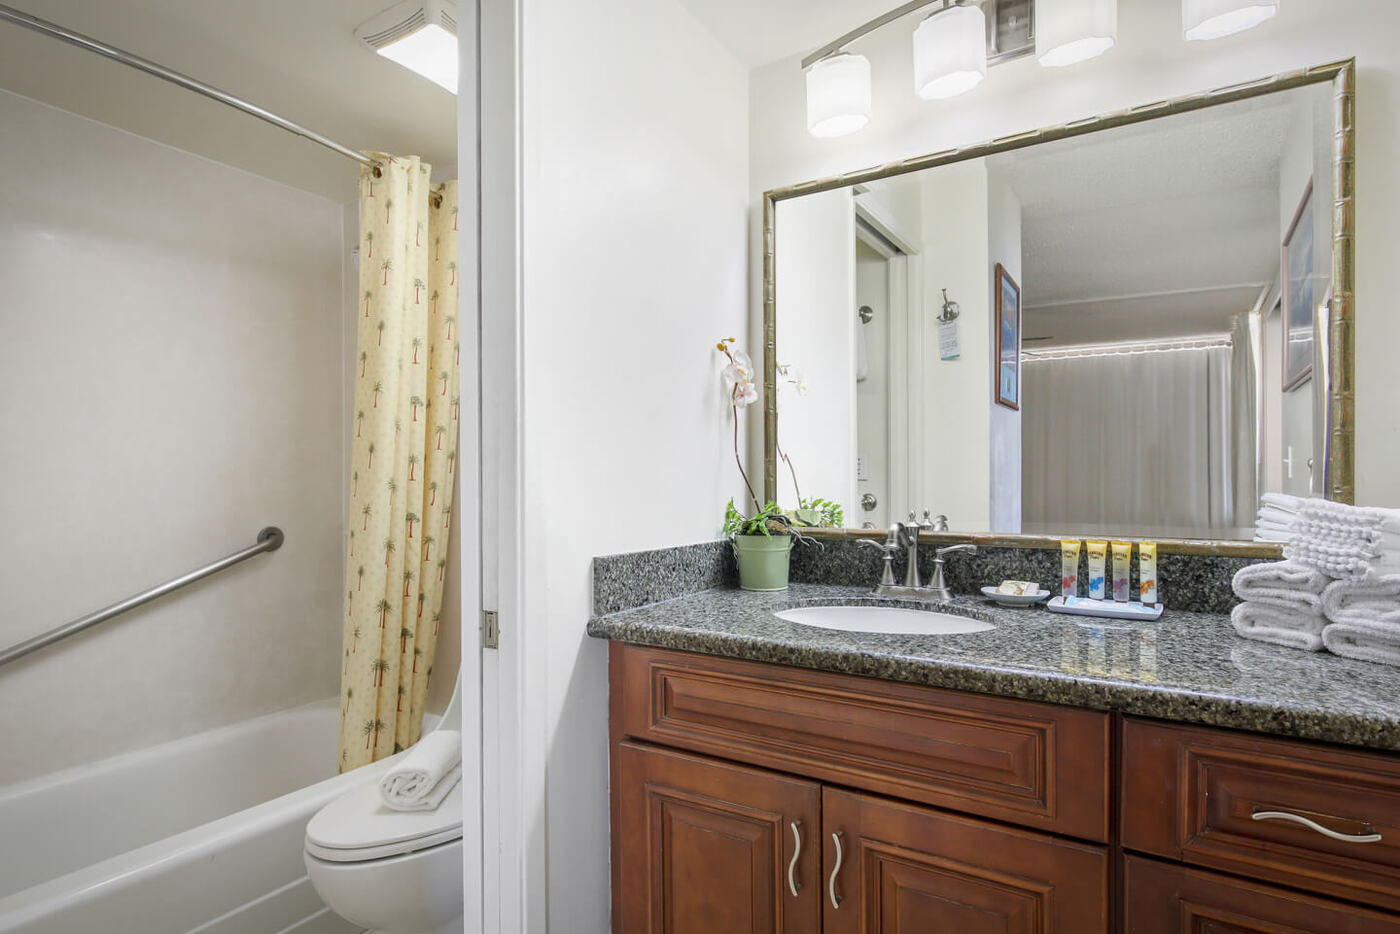 1-Bedroom Deluxe Ocean View bedroom bathroom with sink, shower/bathtub combo, and toilet.